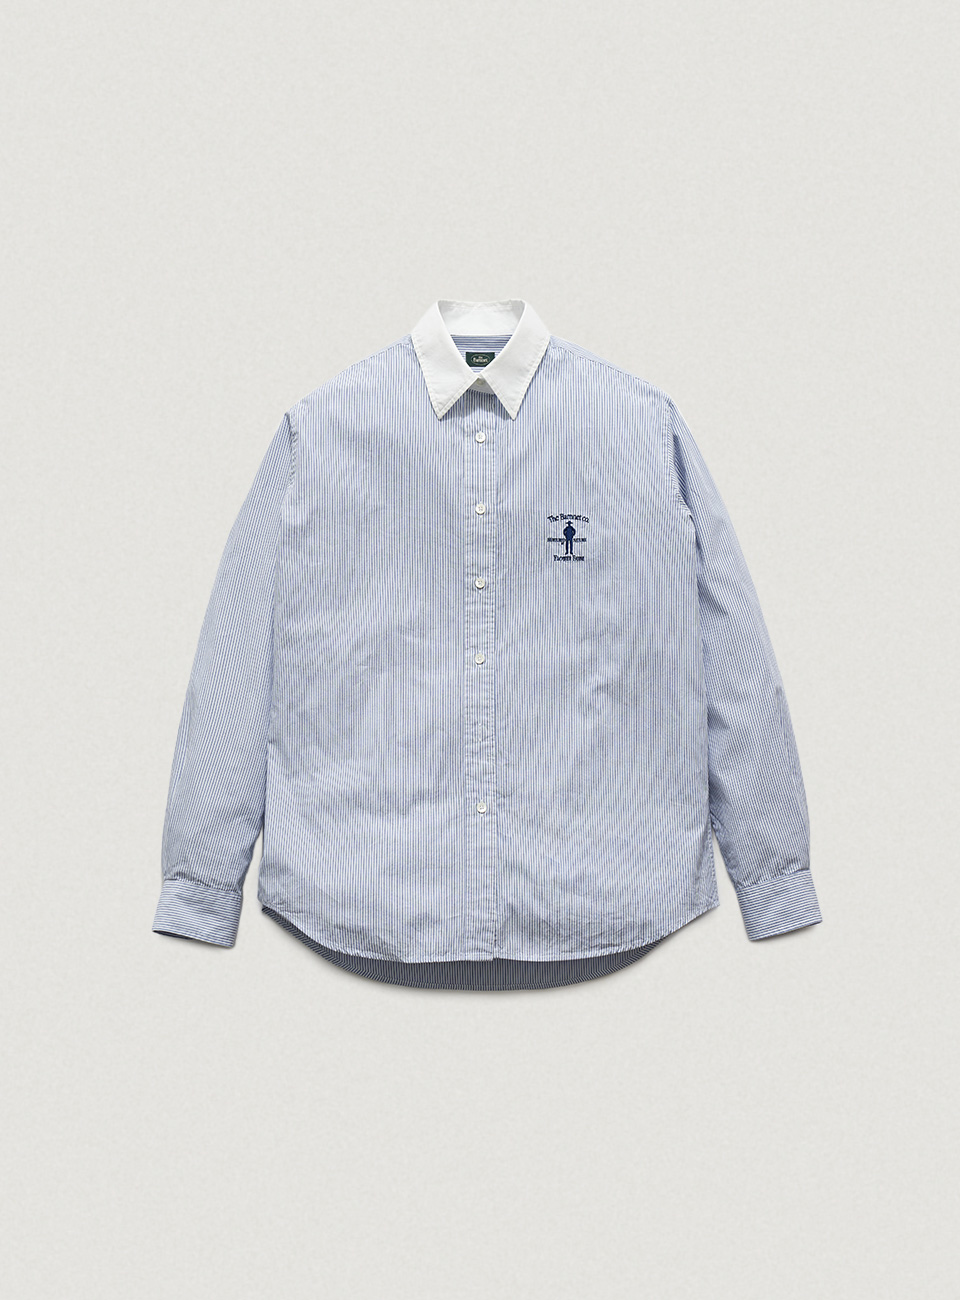 Blue Striped Flower Farm Uniform Shirt by SUNWELL[4월 초 순차 배송]